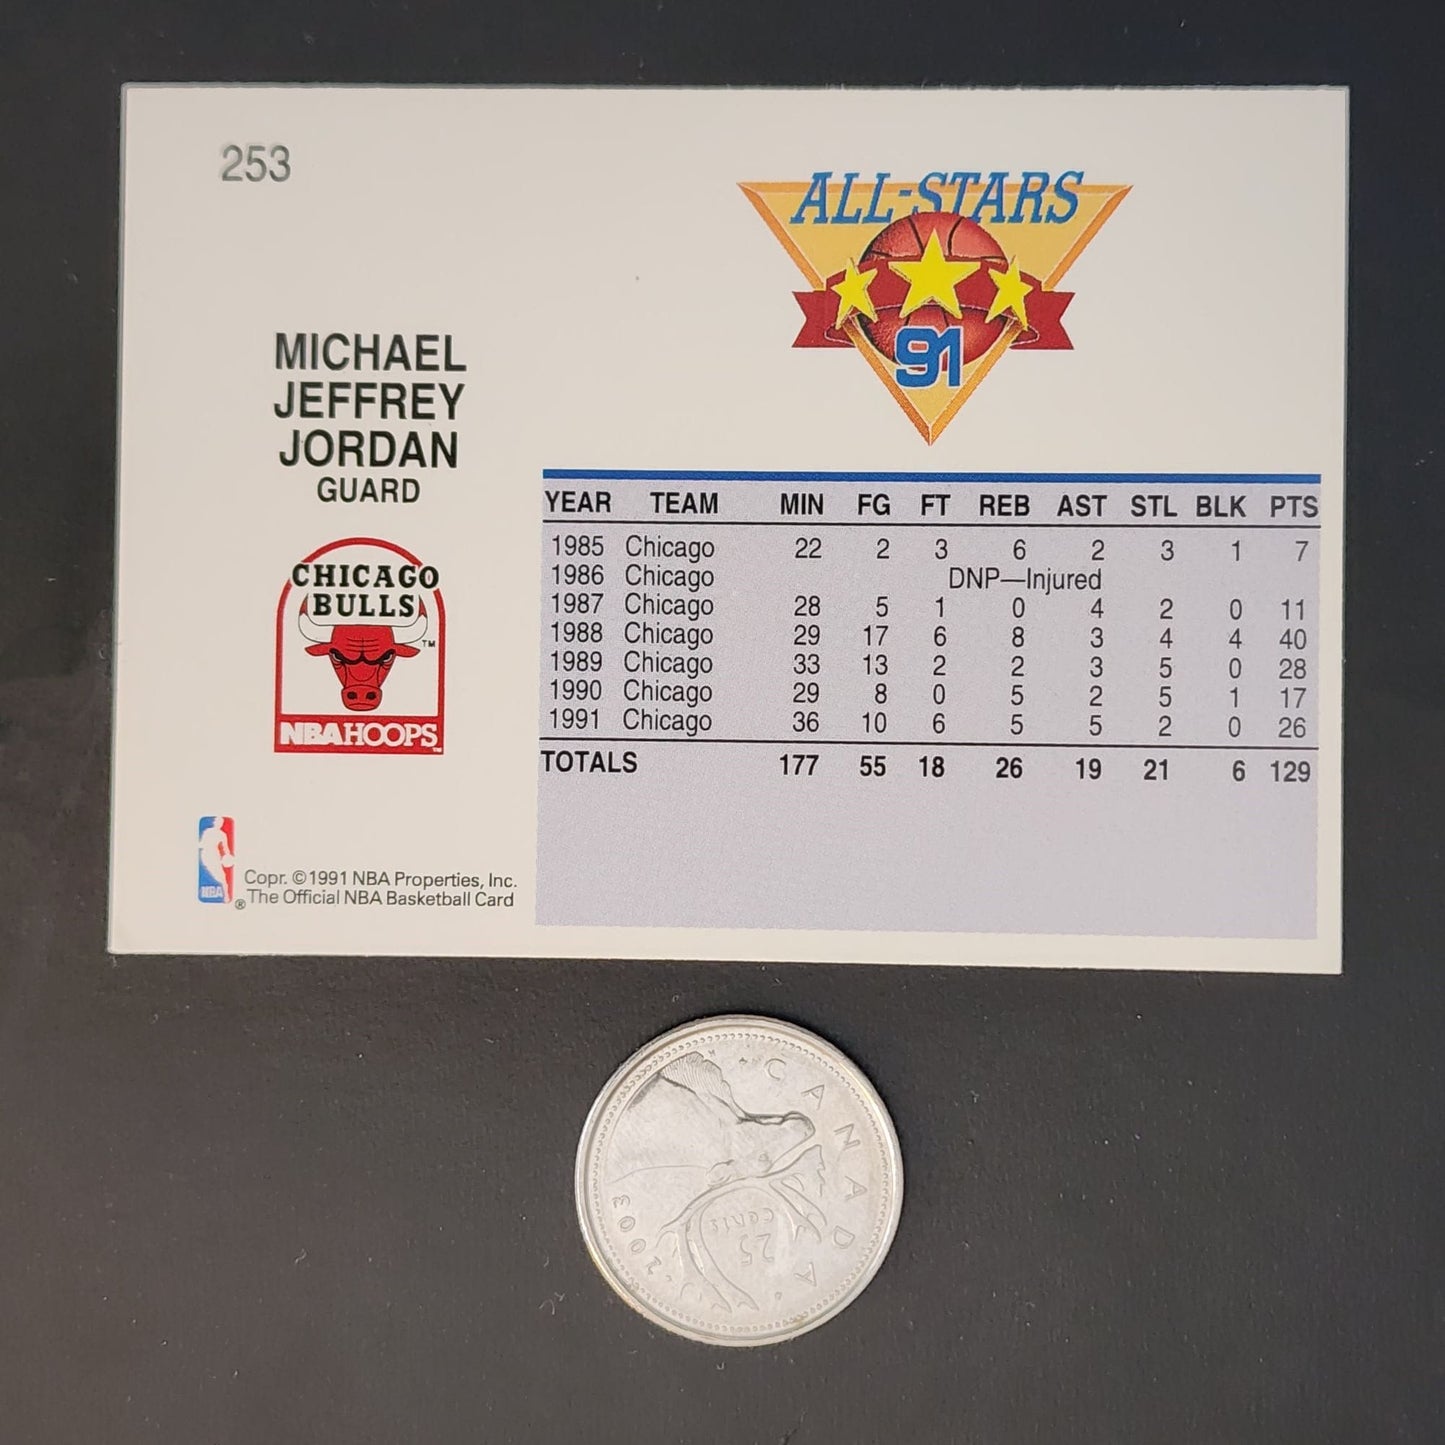 Basketball card featuring Michael Jordan beside a quarter.